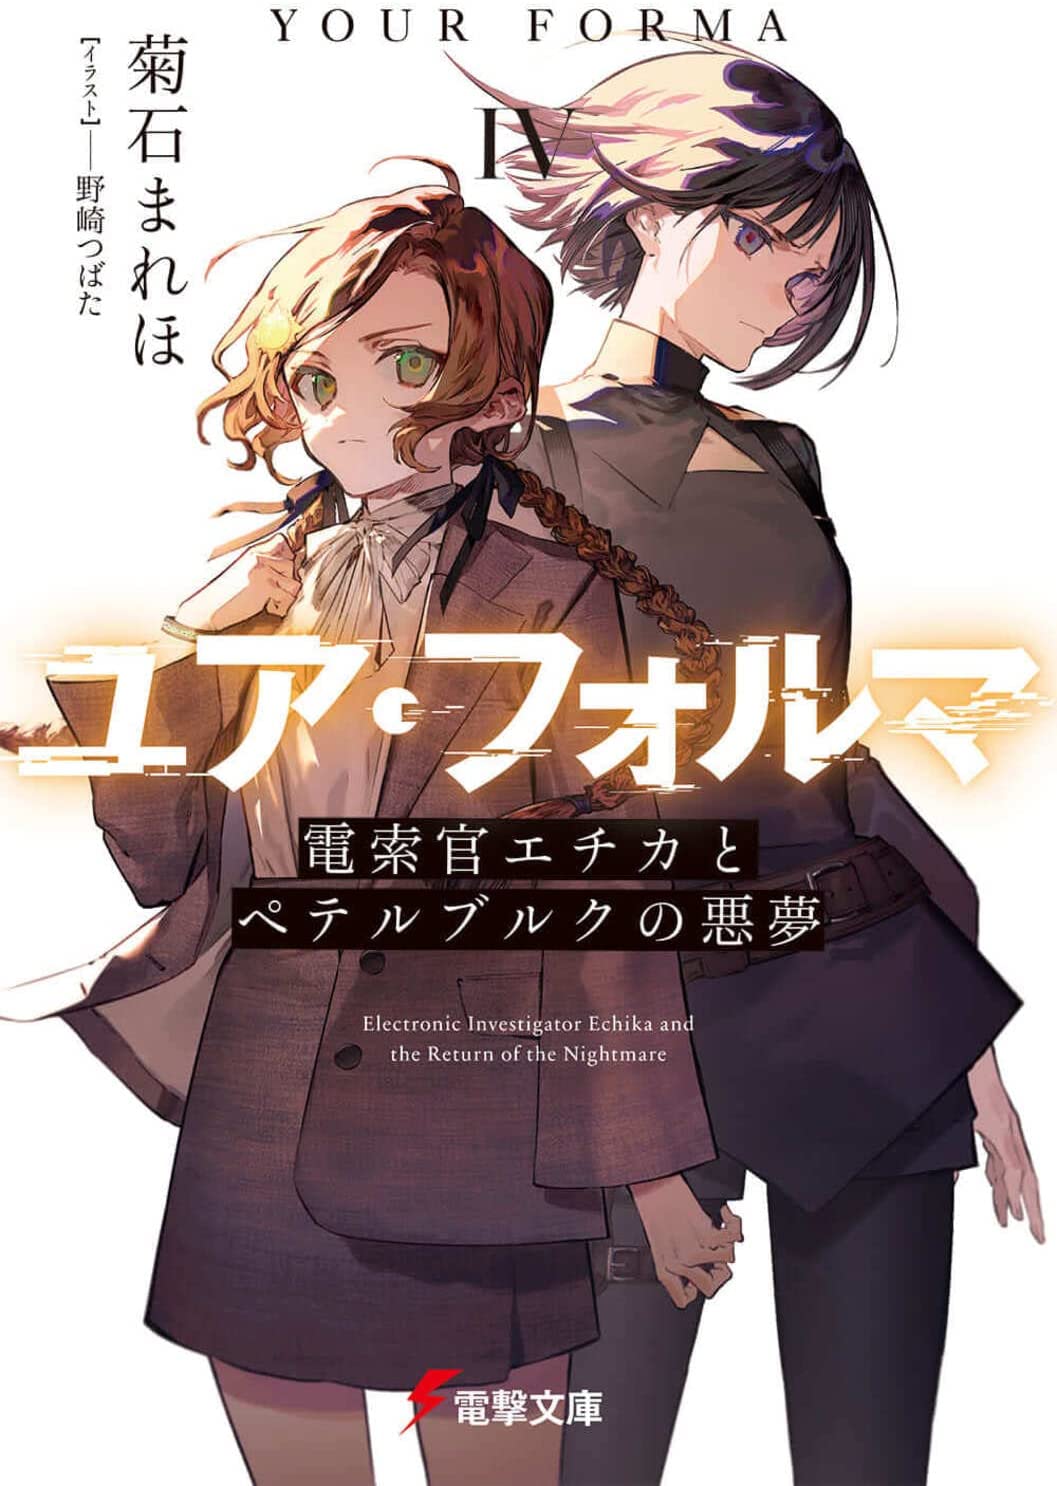 Faixa 04 - Anime X Novel